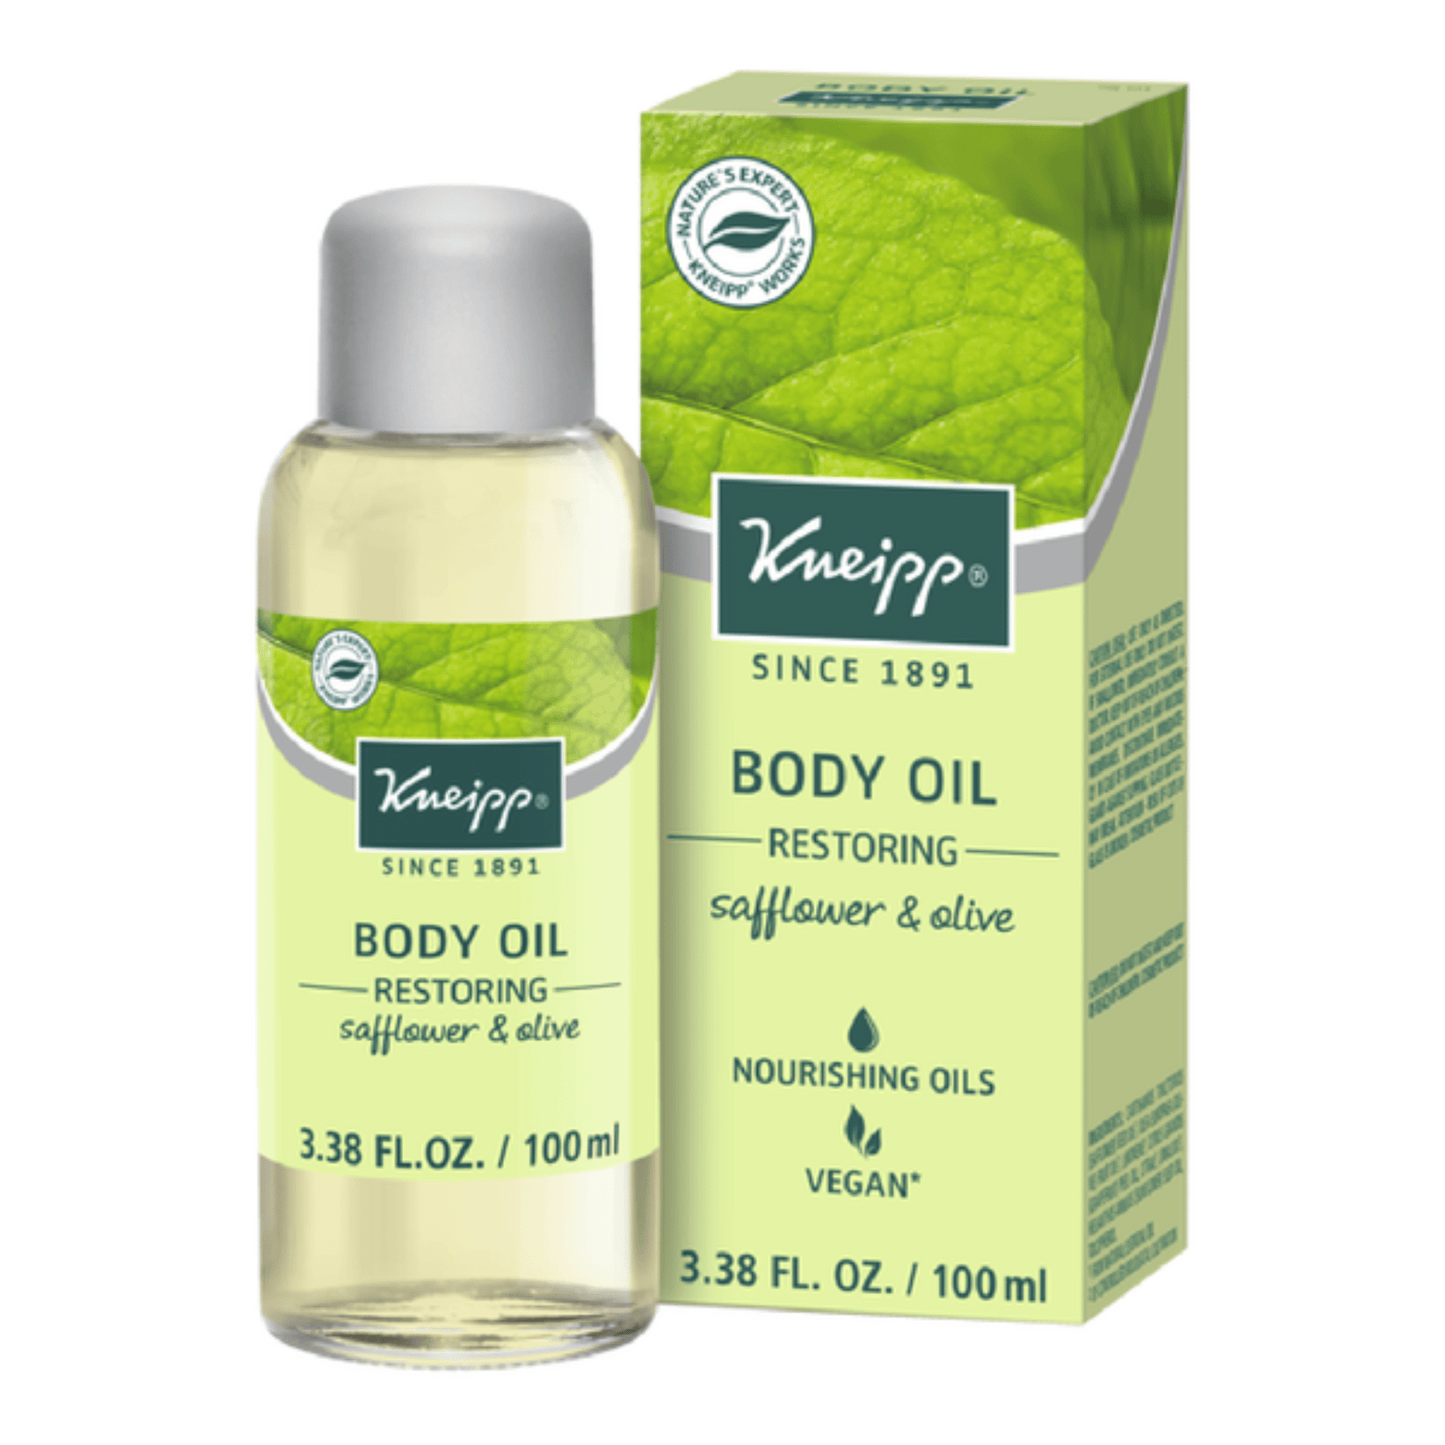 Primary Image of Safflower & Olive Restoring Body Oil